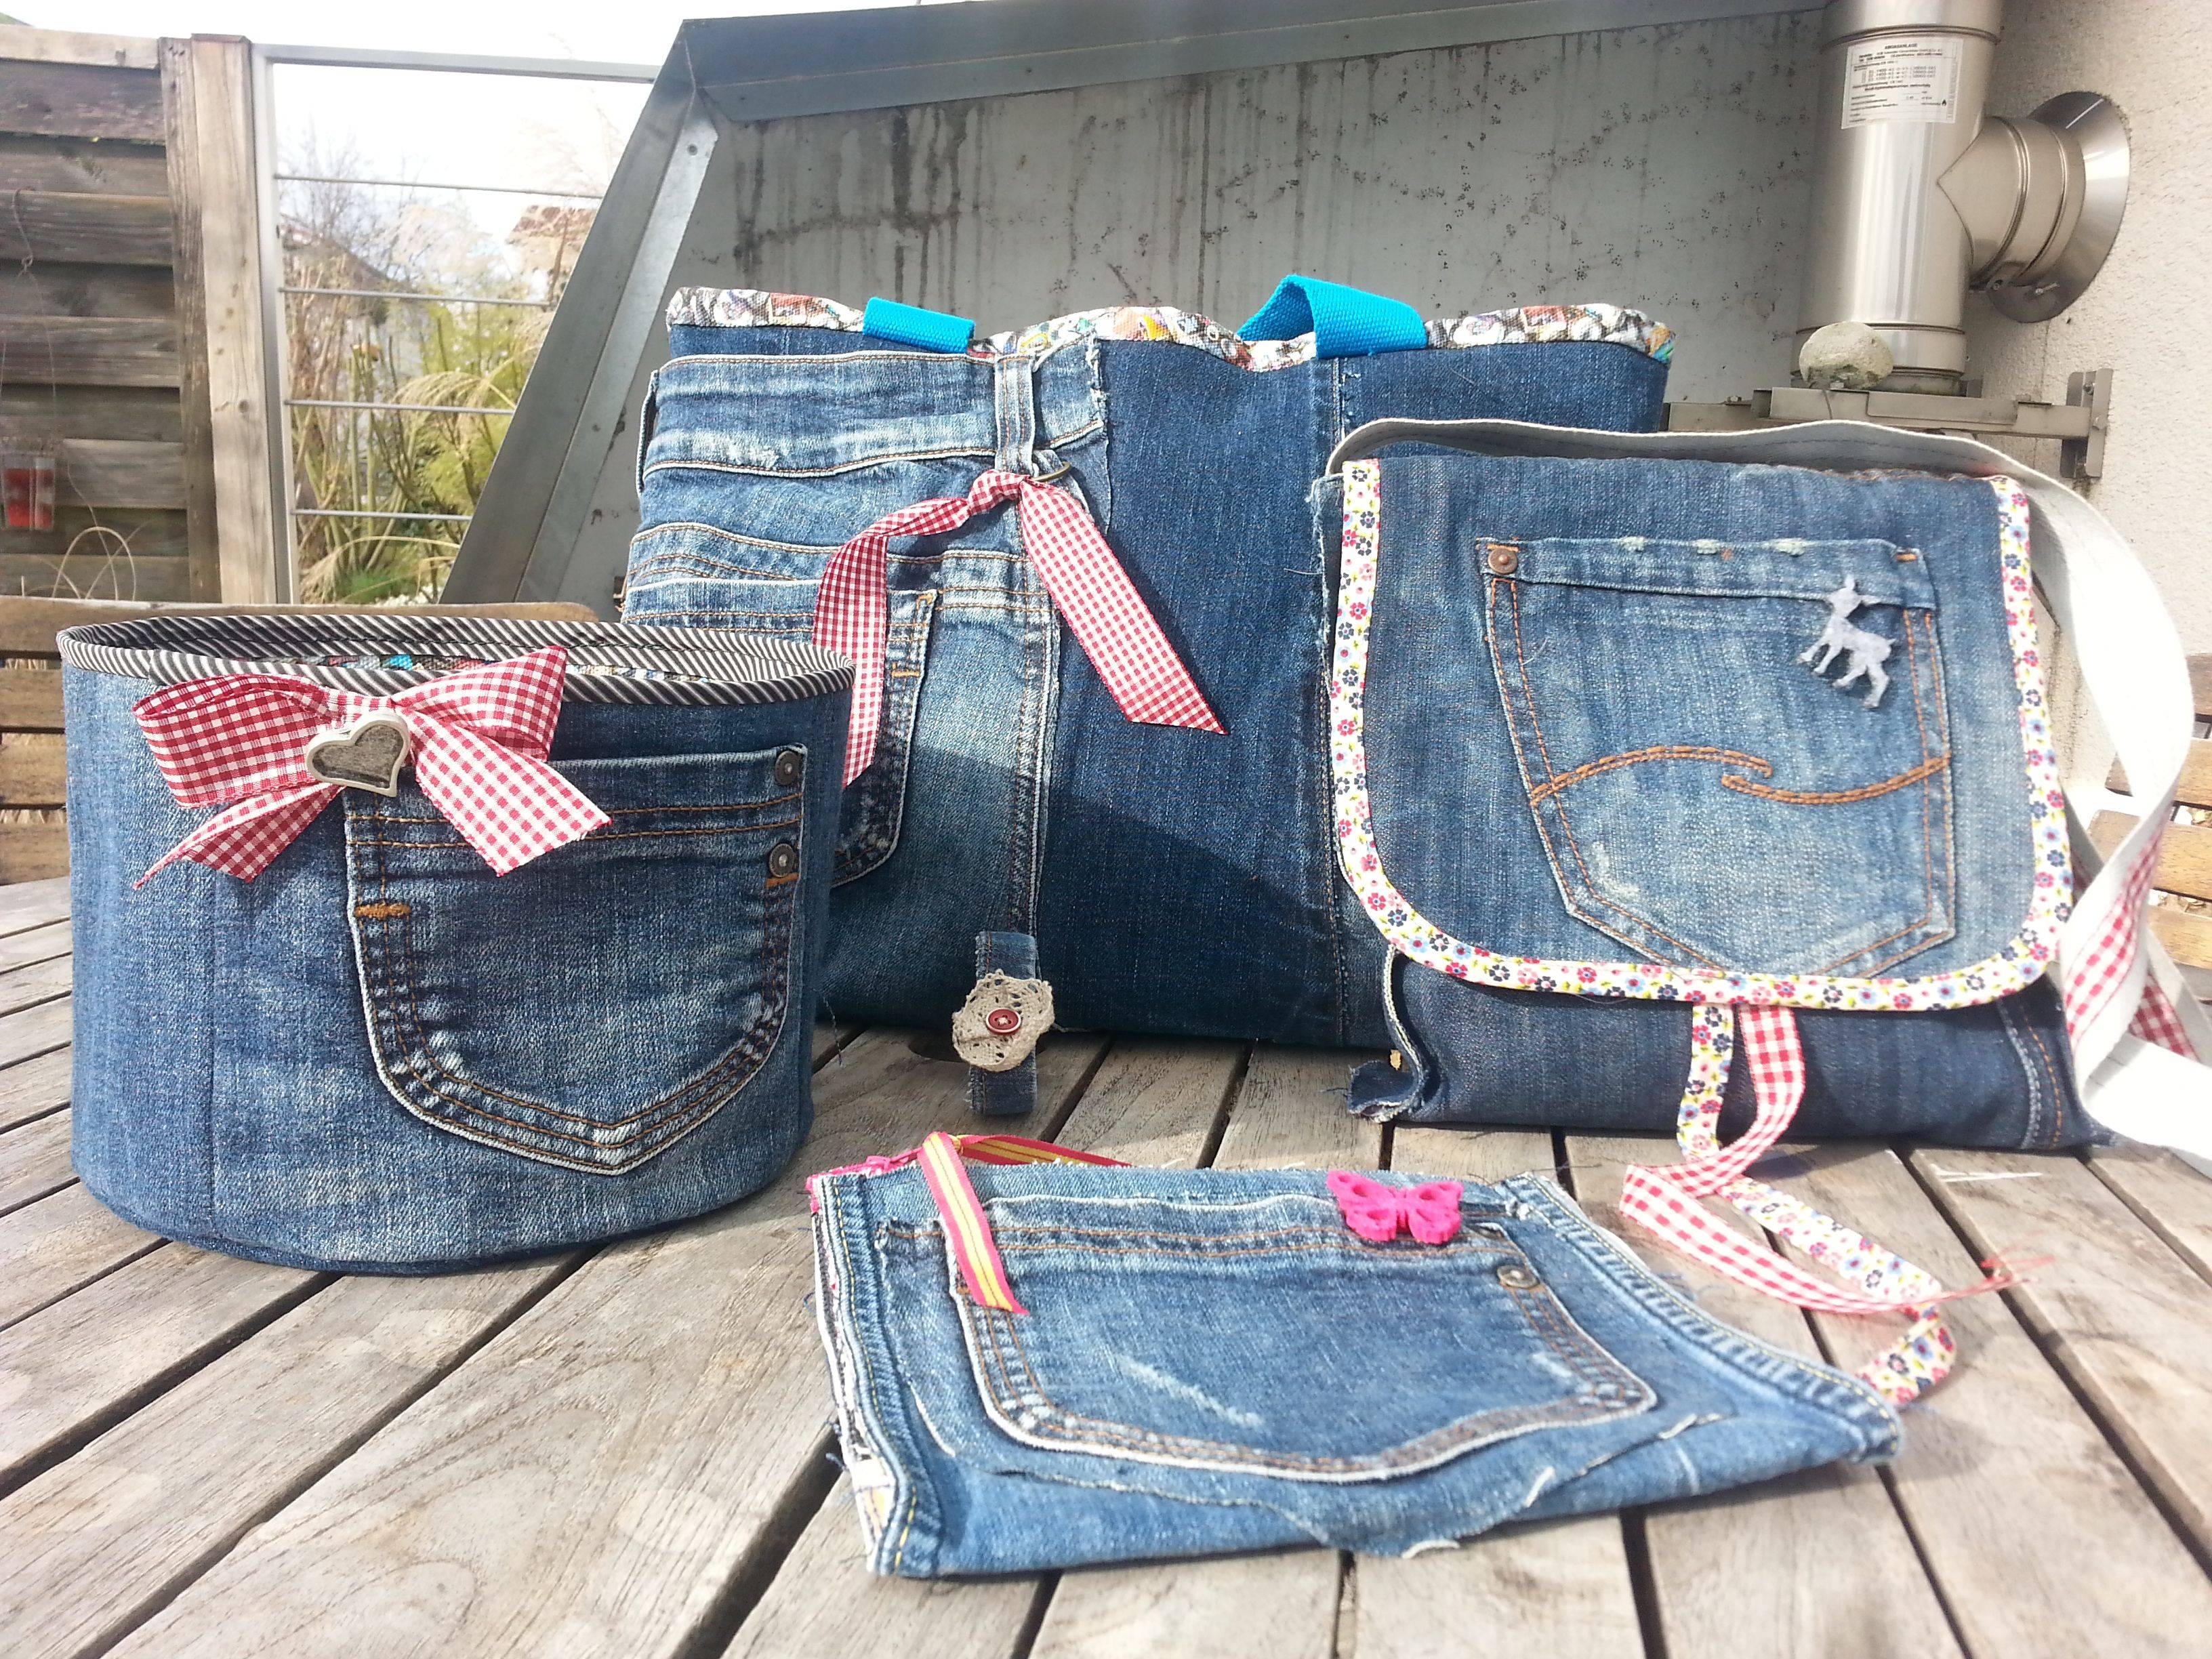 Taschen und Korb aus alten Jeans genäht und verziert. Foto: Birgit Rückert